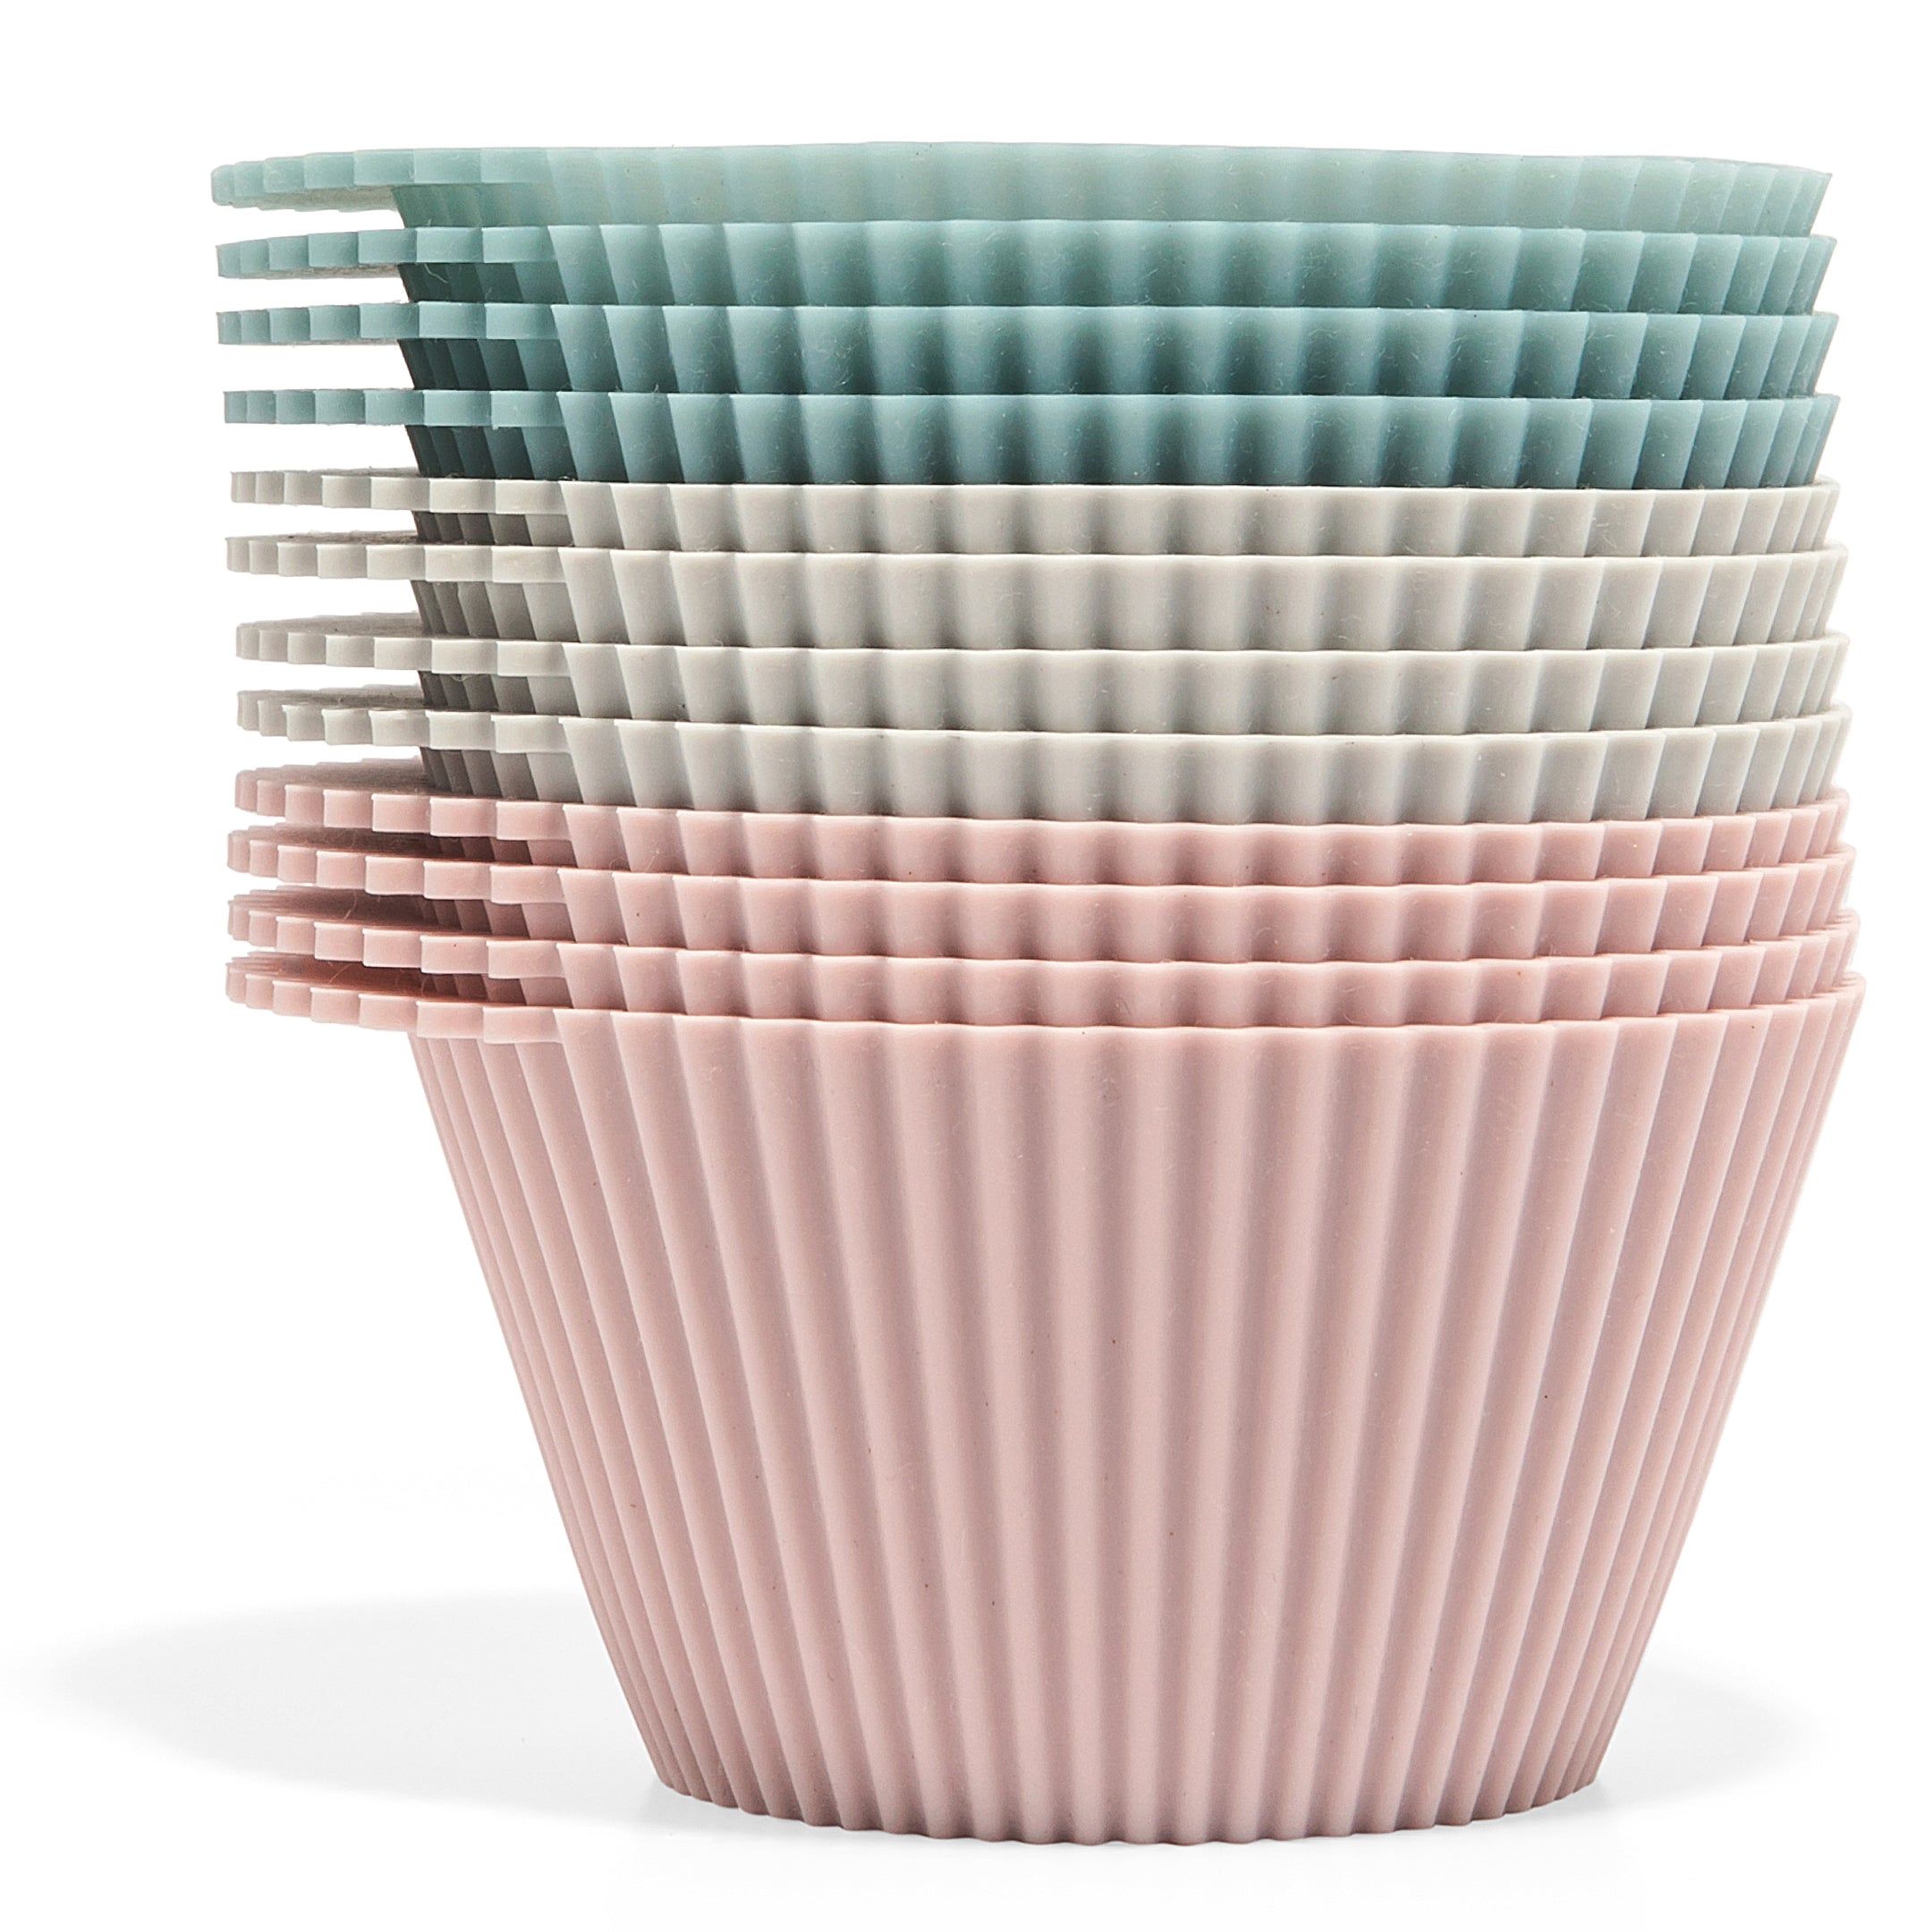 Jumbo Wednesday Baking Cups - Little Color Company